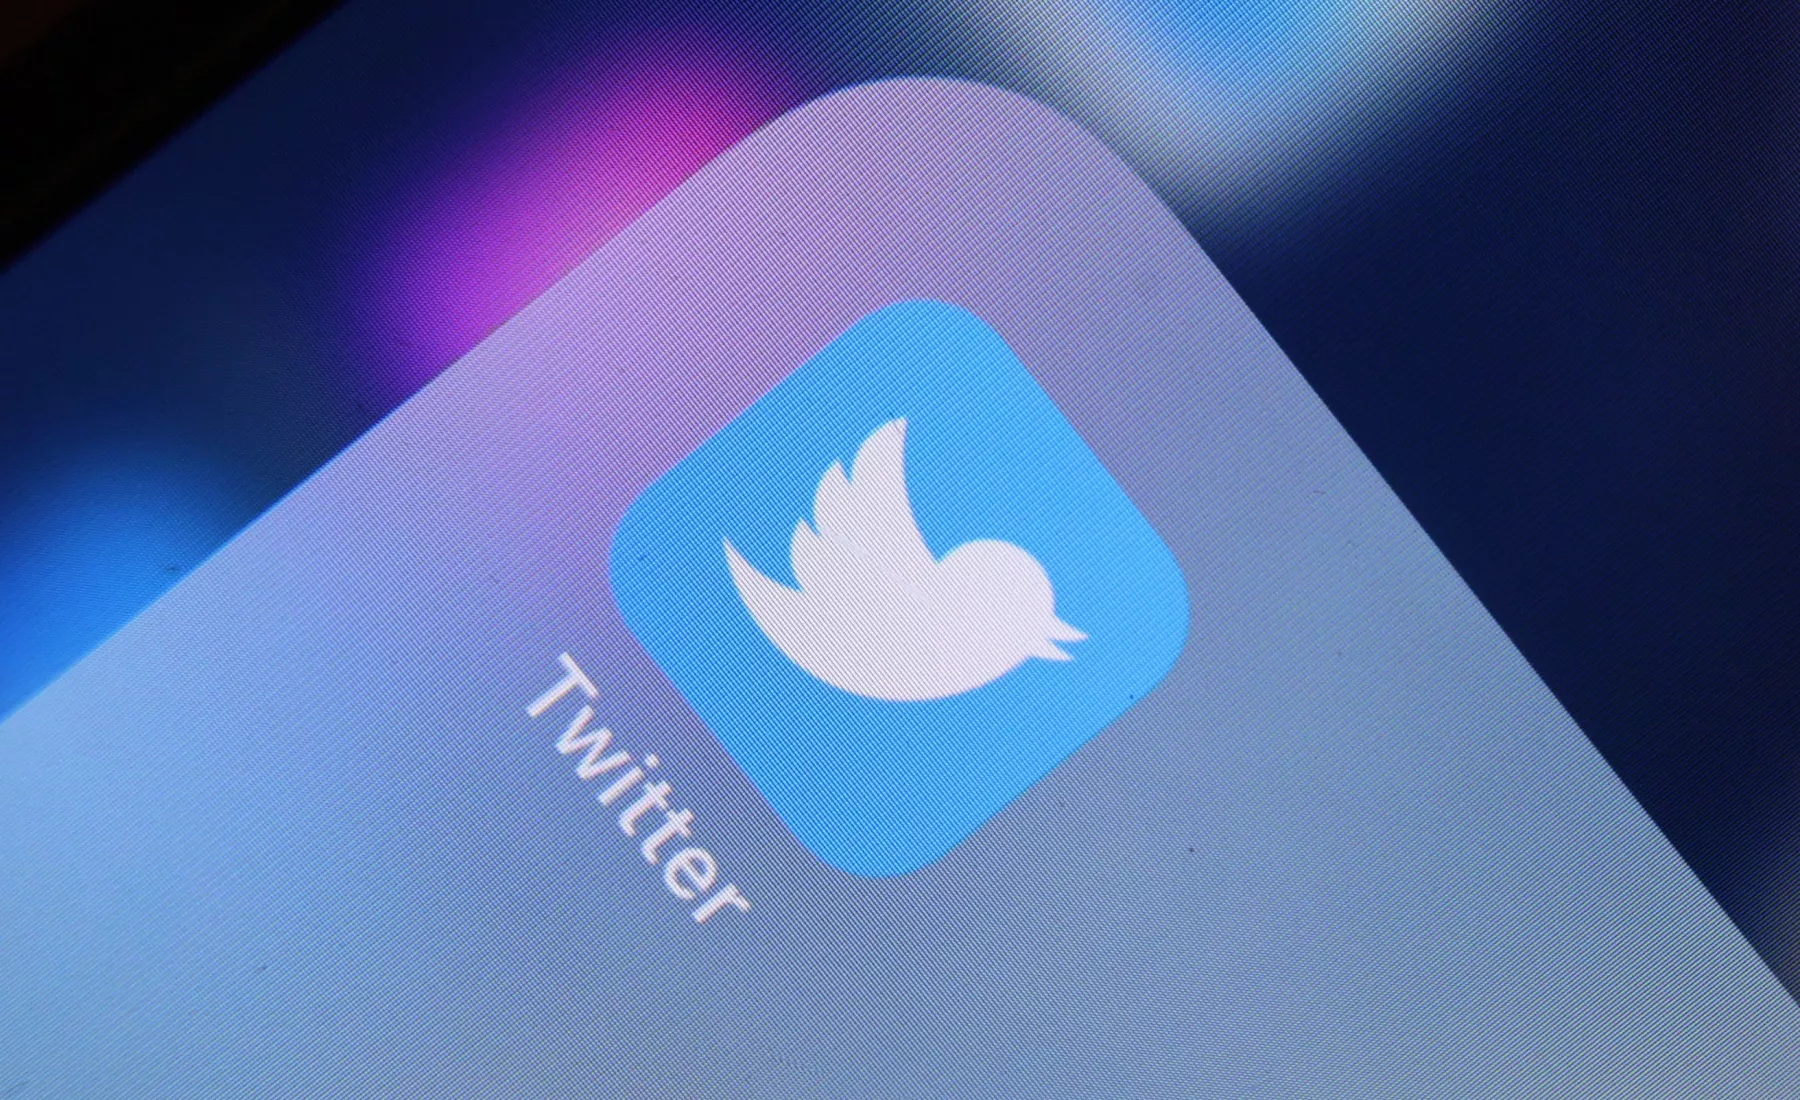 Das Logo der Nachrichten-Plattform Twitter ist auf dem Display eines iPhone zu sehen.